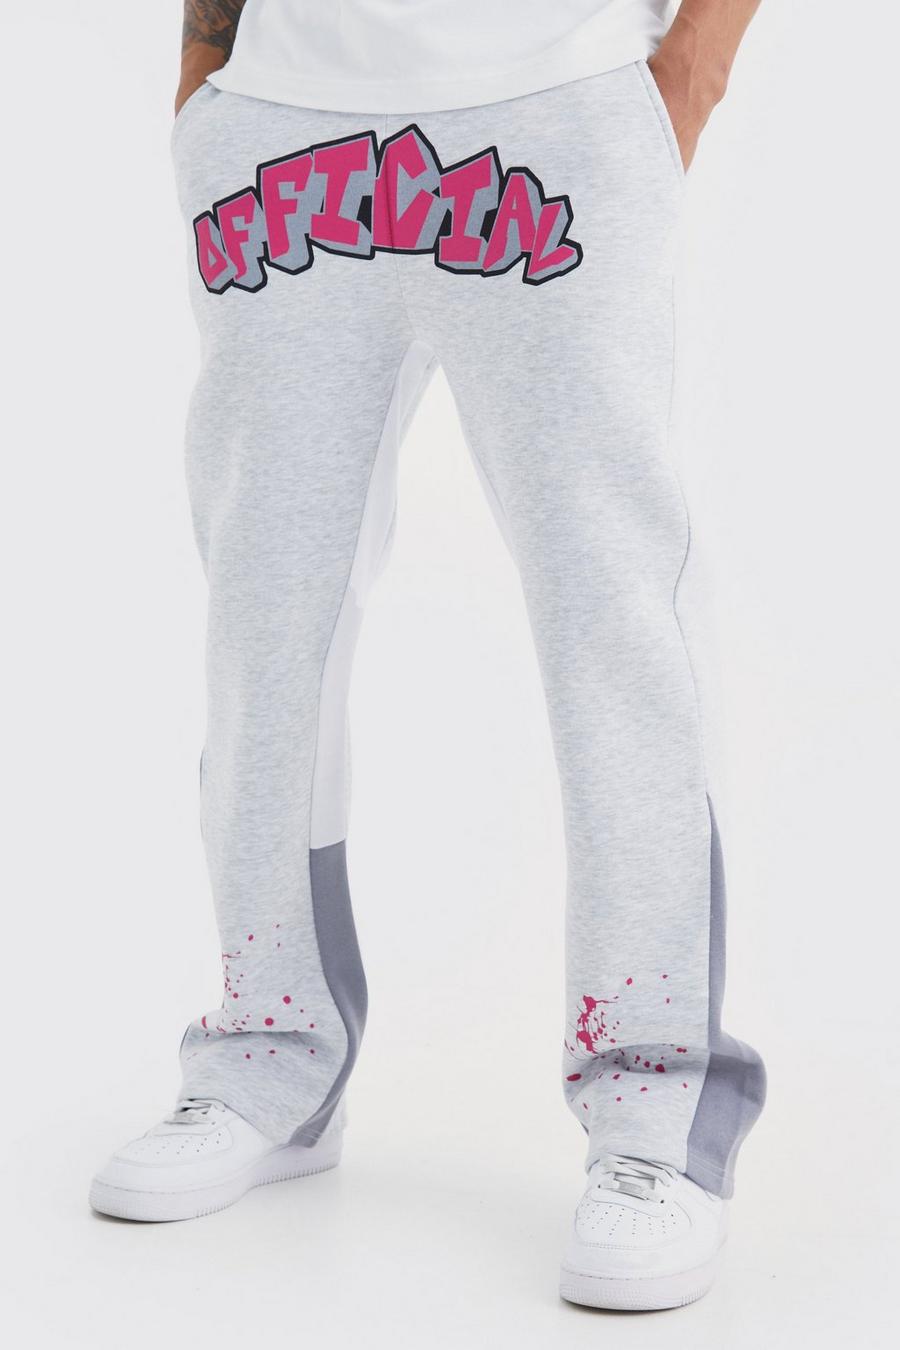 Pantaloni tuta Official stile Graffiti con inserti e schizzi di colore, Ash grey